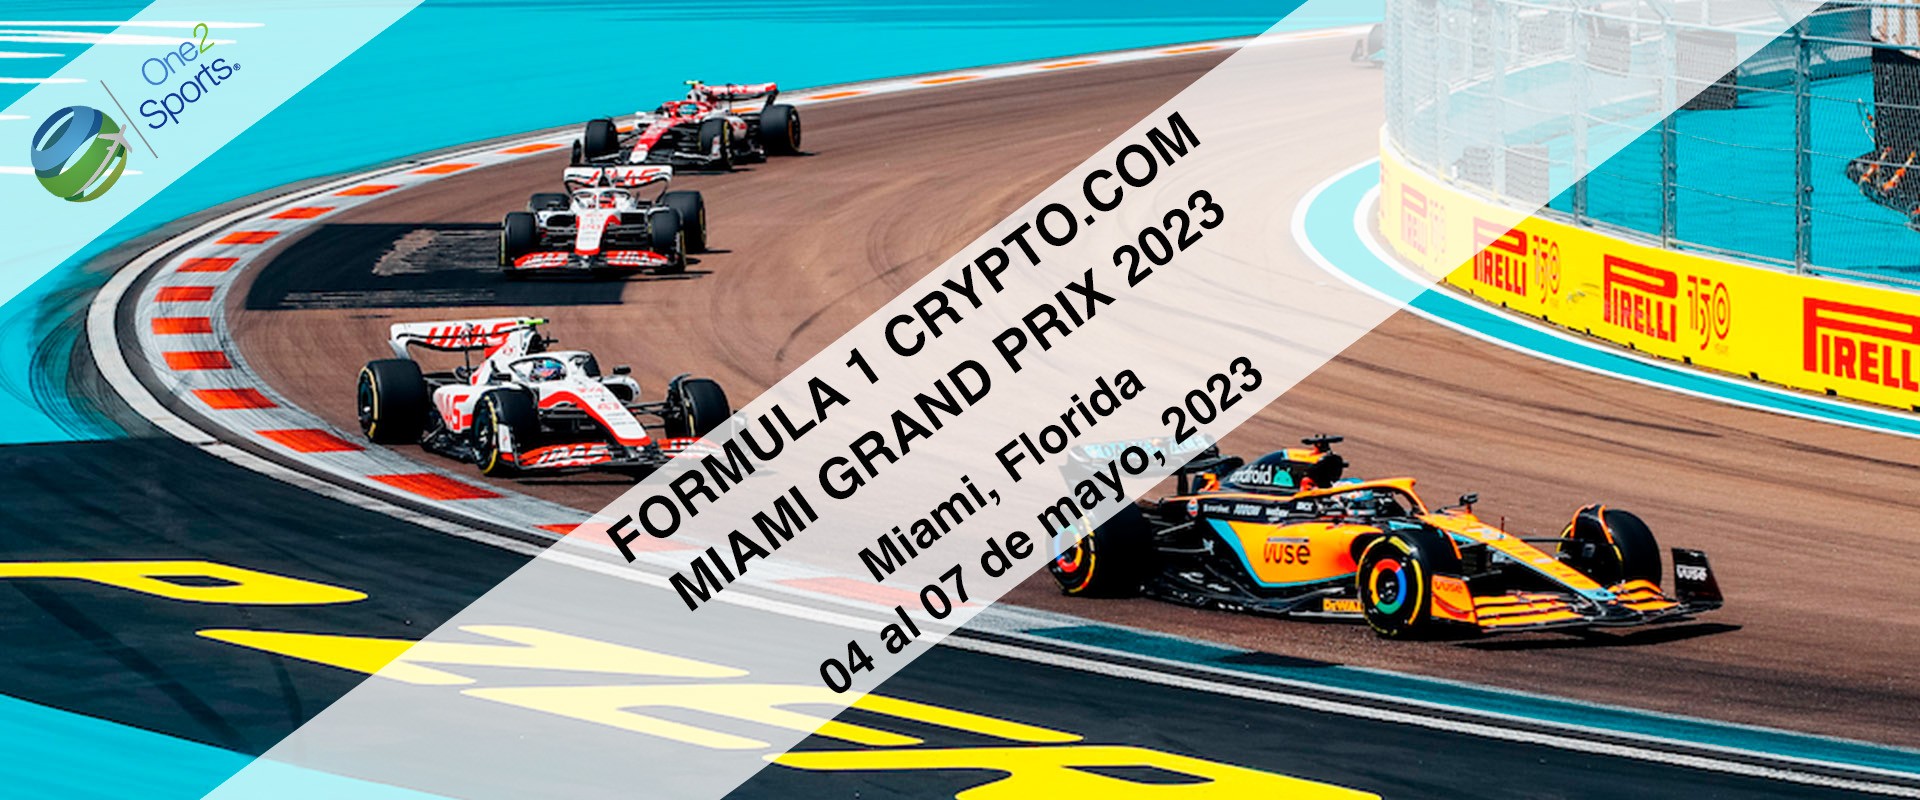 F1 Gran Premio Miami